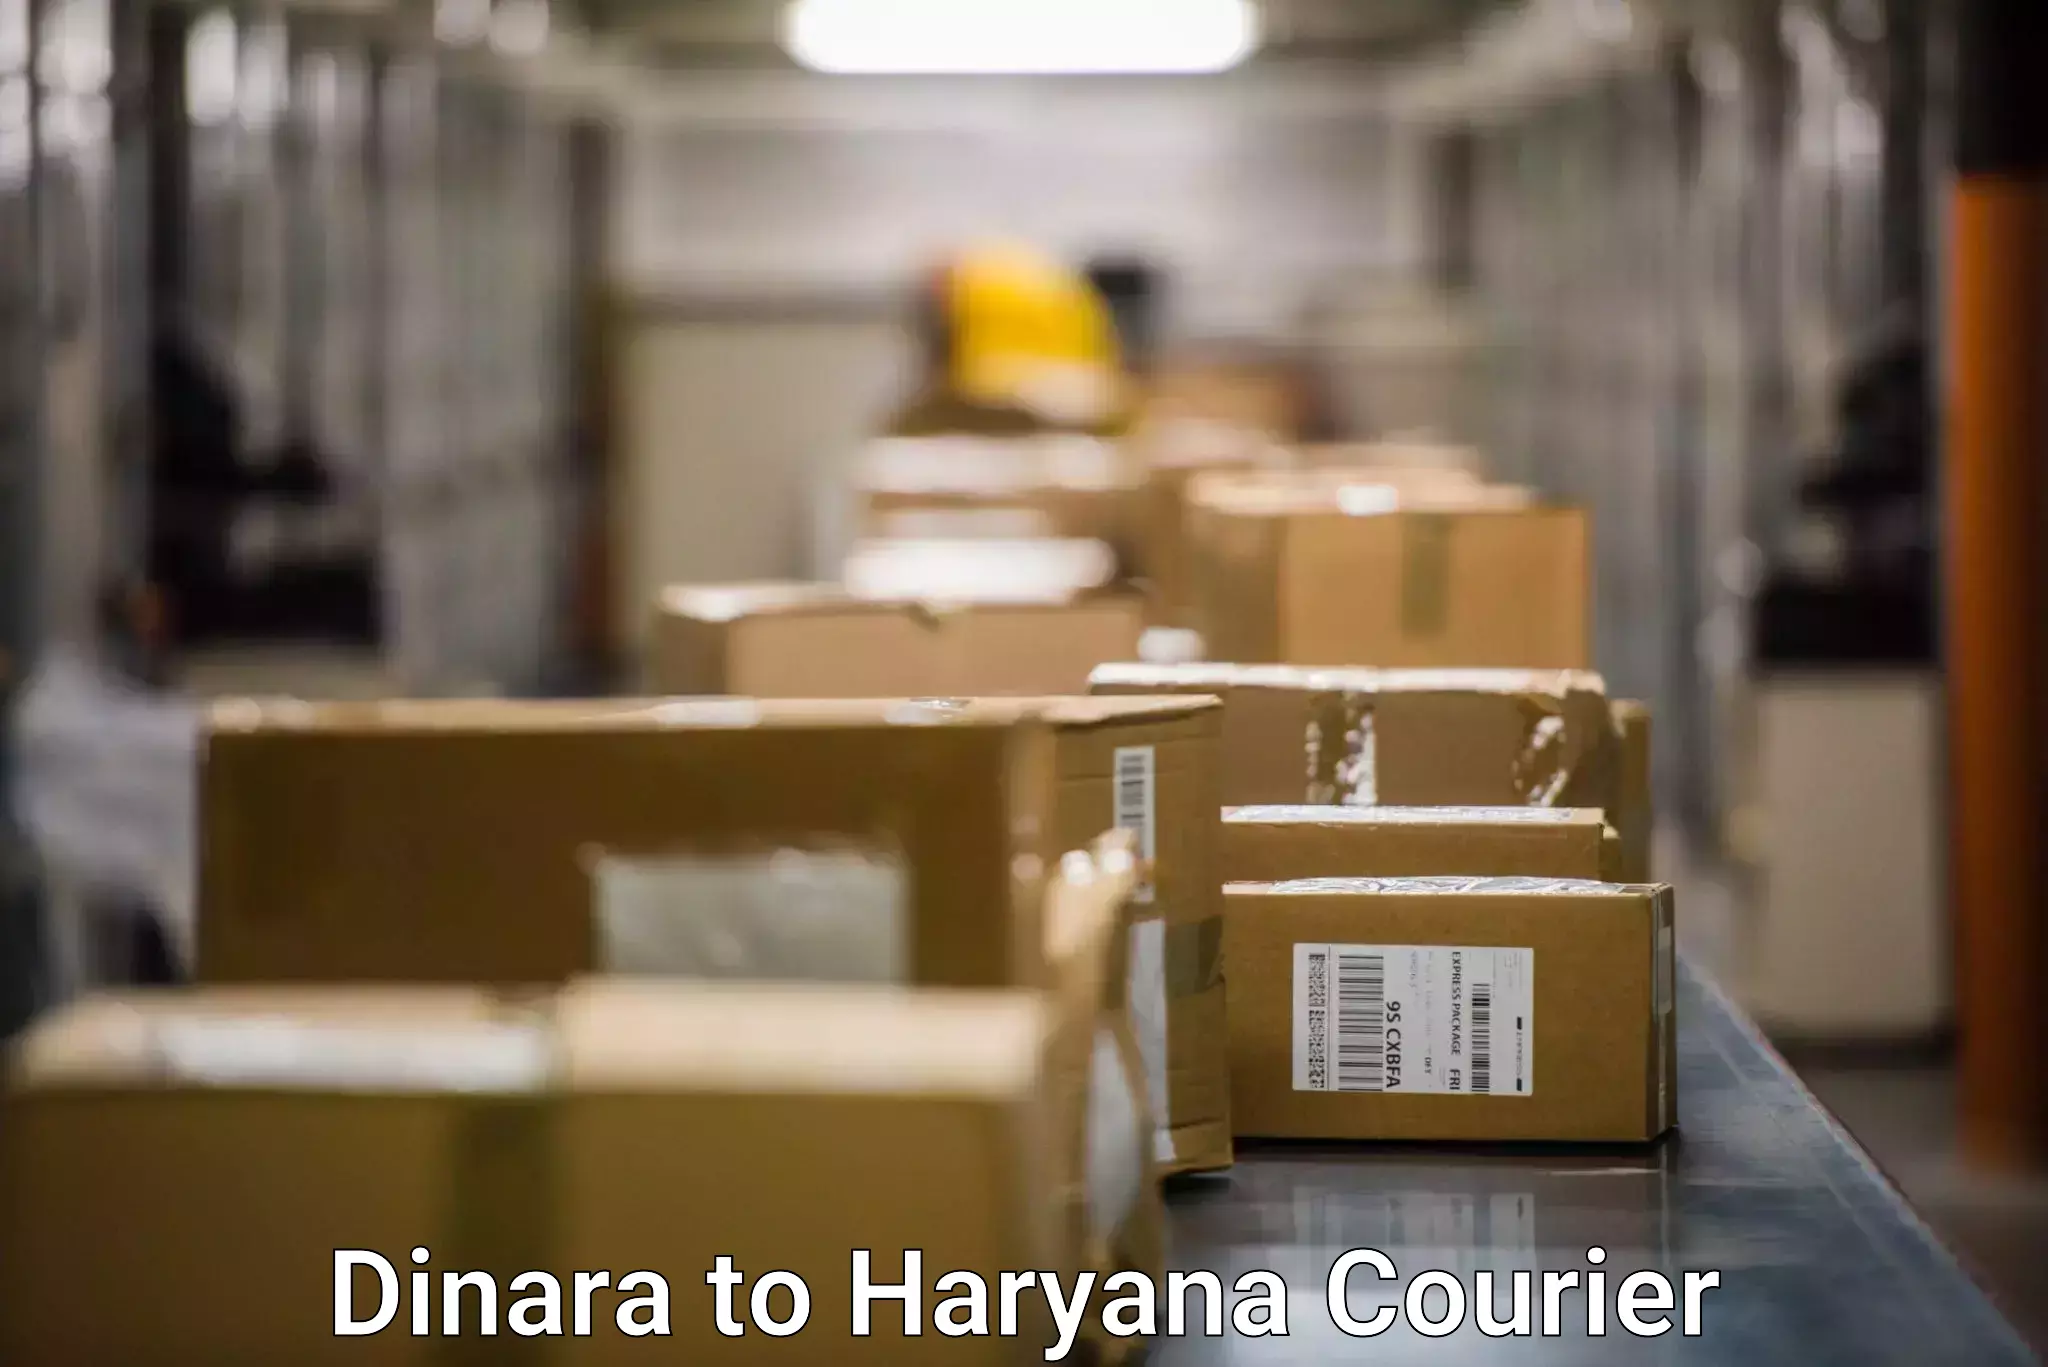 Courier app Dinara to Gohana